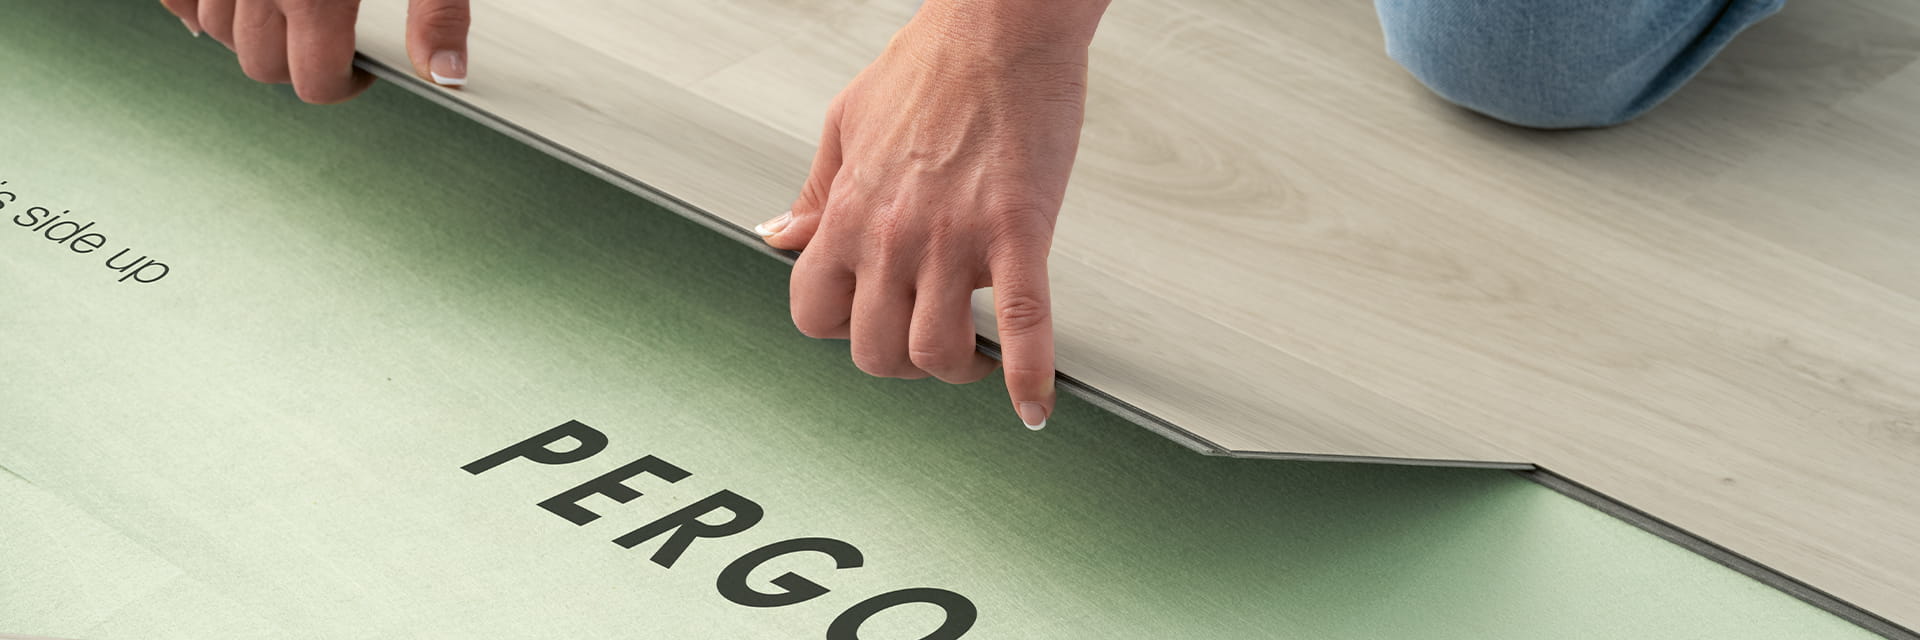 installatie van een grijze pergo vinylvloer op een ondervloer